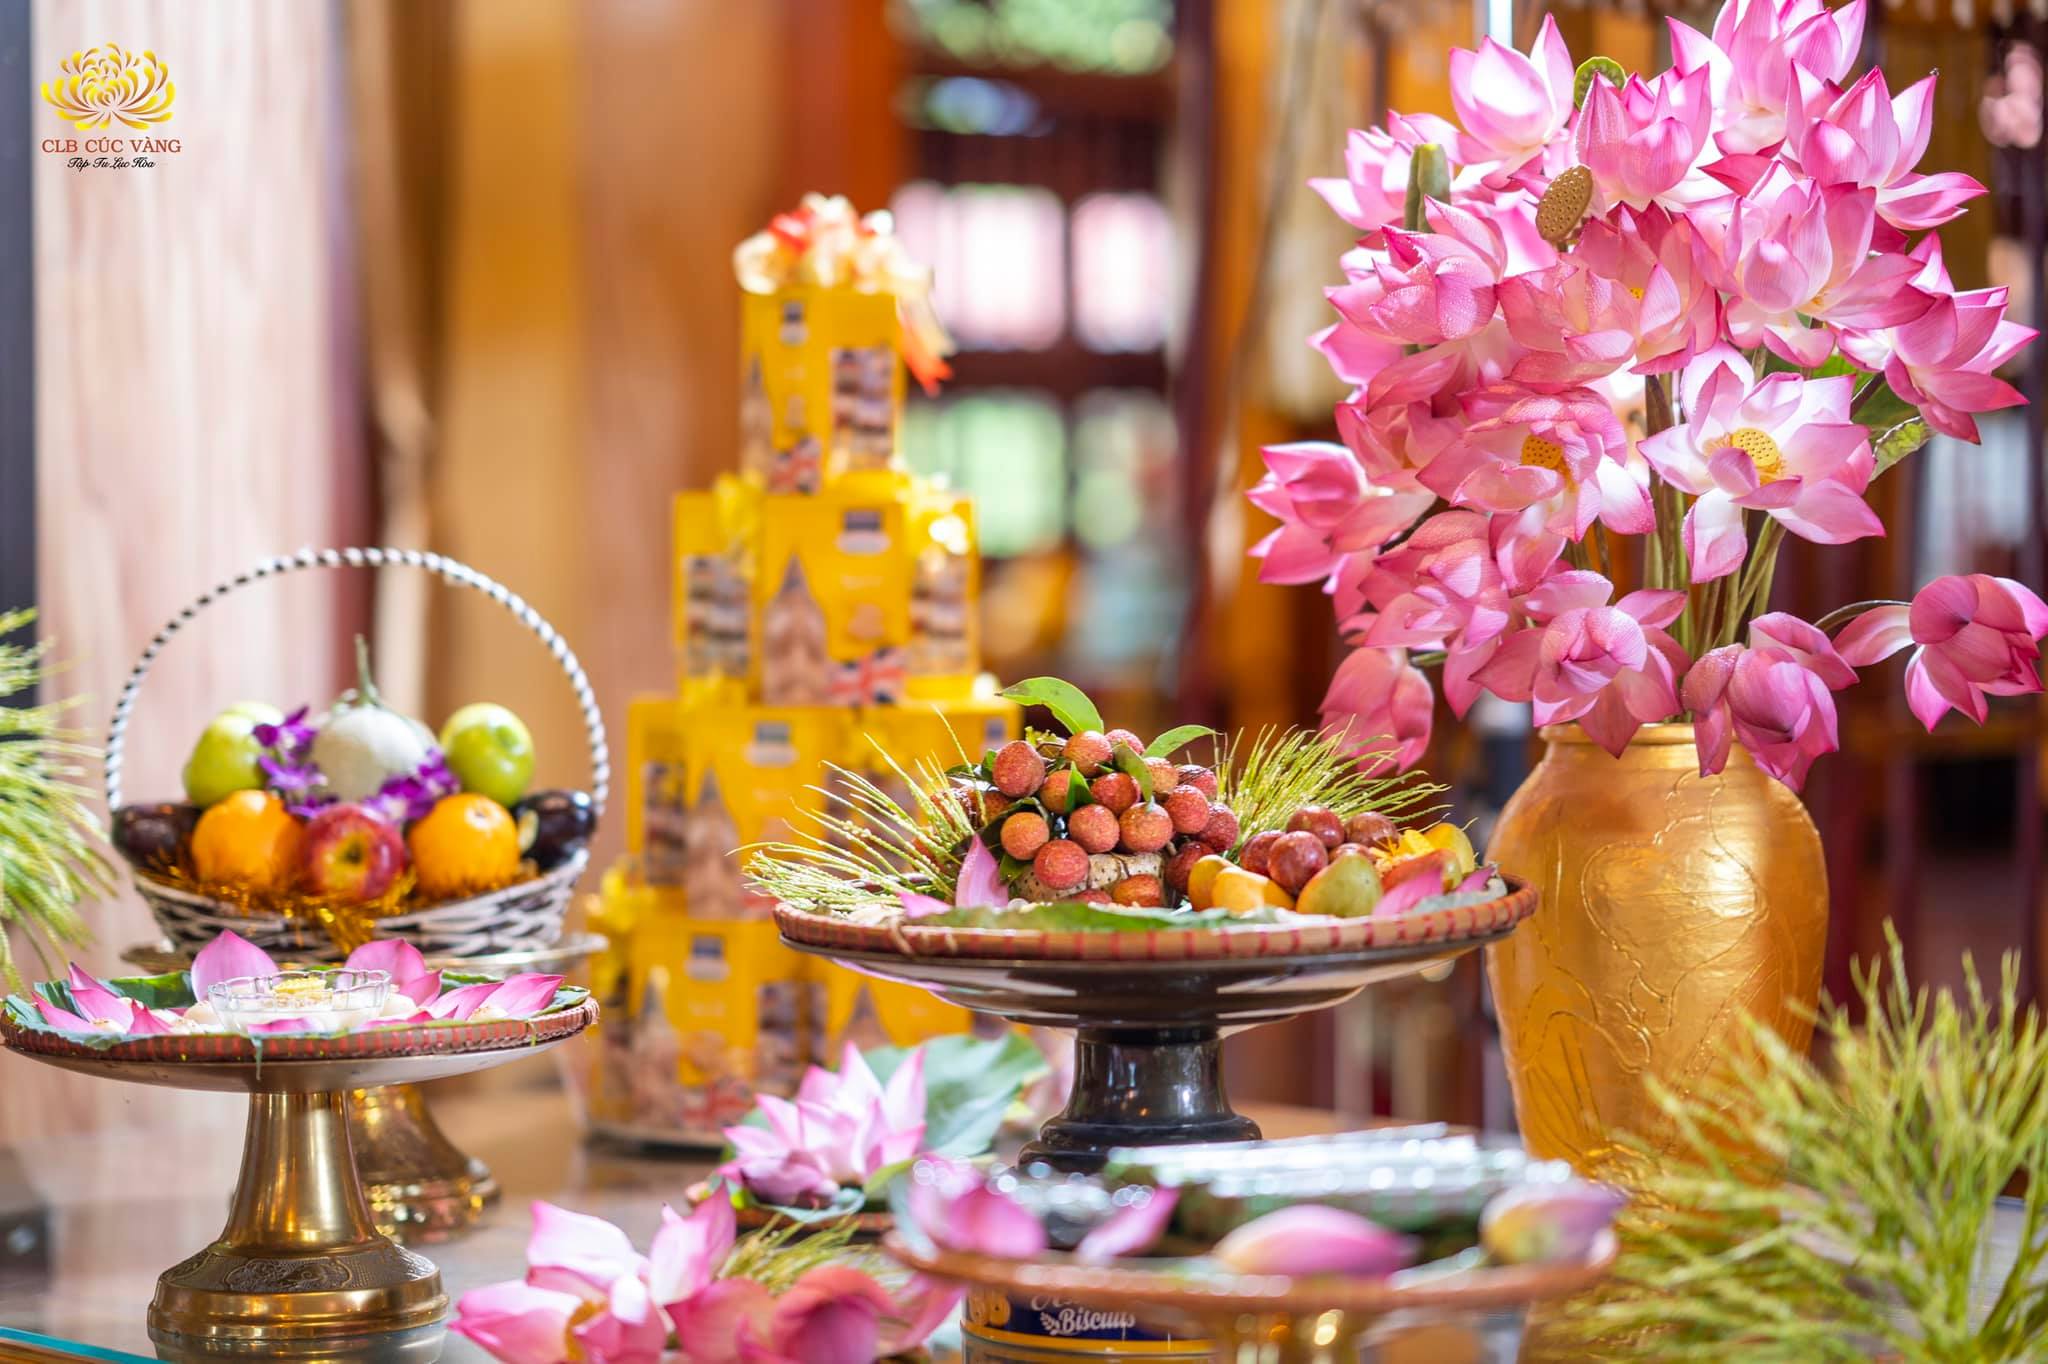 Dưới sự sách tấn của Cô Phạm Thị Yến cùng đôi bàn tay khéo léo của các Phật tử đã trang trí lên những lẵng hoa, giỏ quả và chén bánh đẹp mắt để dâng lên cúng dường Tam Bảo